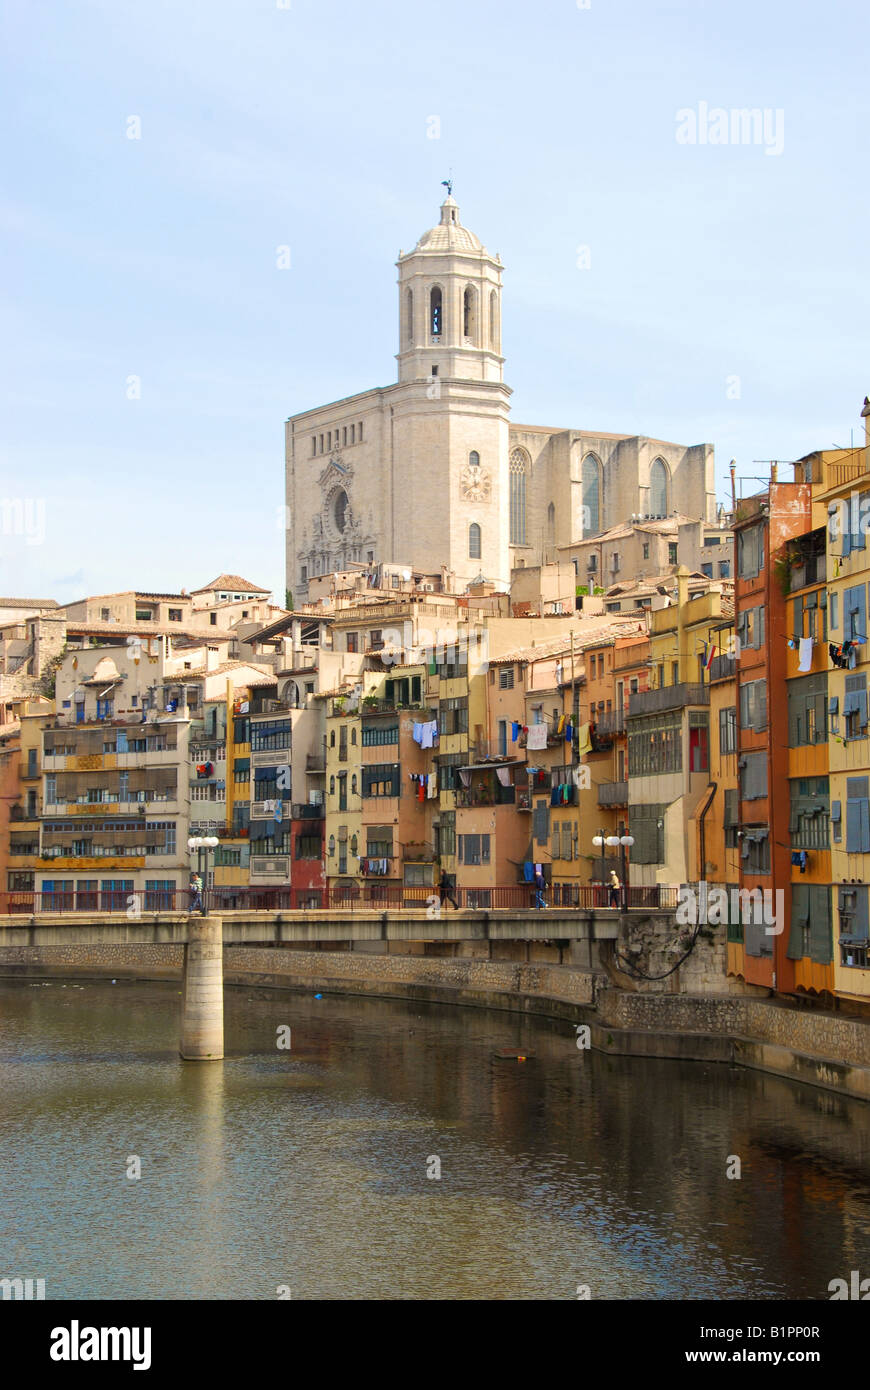 Kathedrale de Santa Maria, mit Blick auf den Fluss Onyer (Onyar) in der alten ummauerten Stadt Girona (Gerona) Spanien. Stockfoto